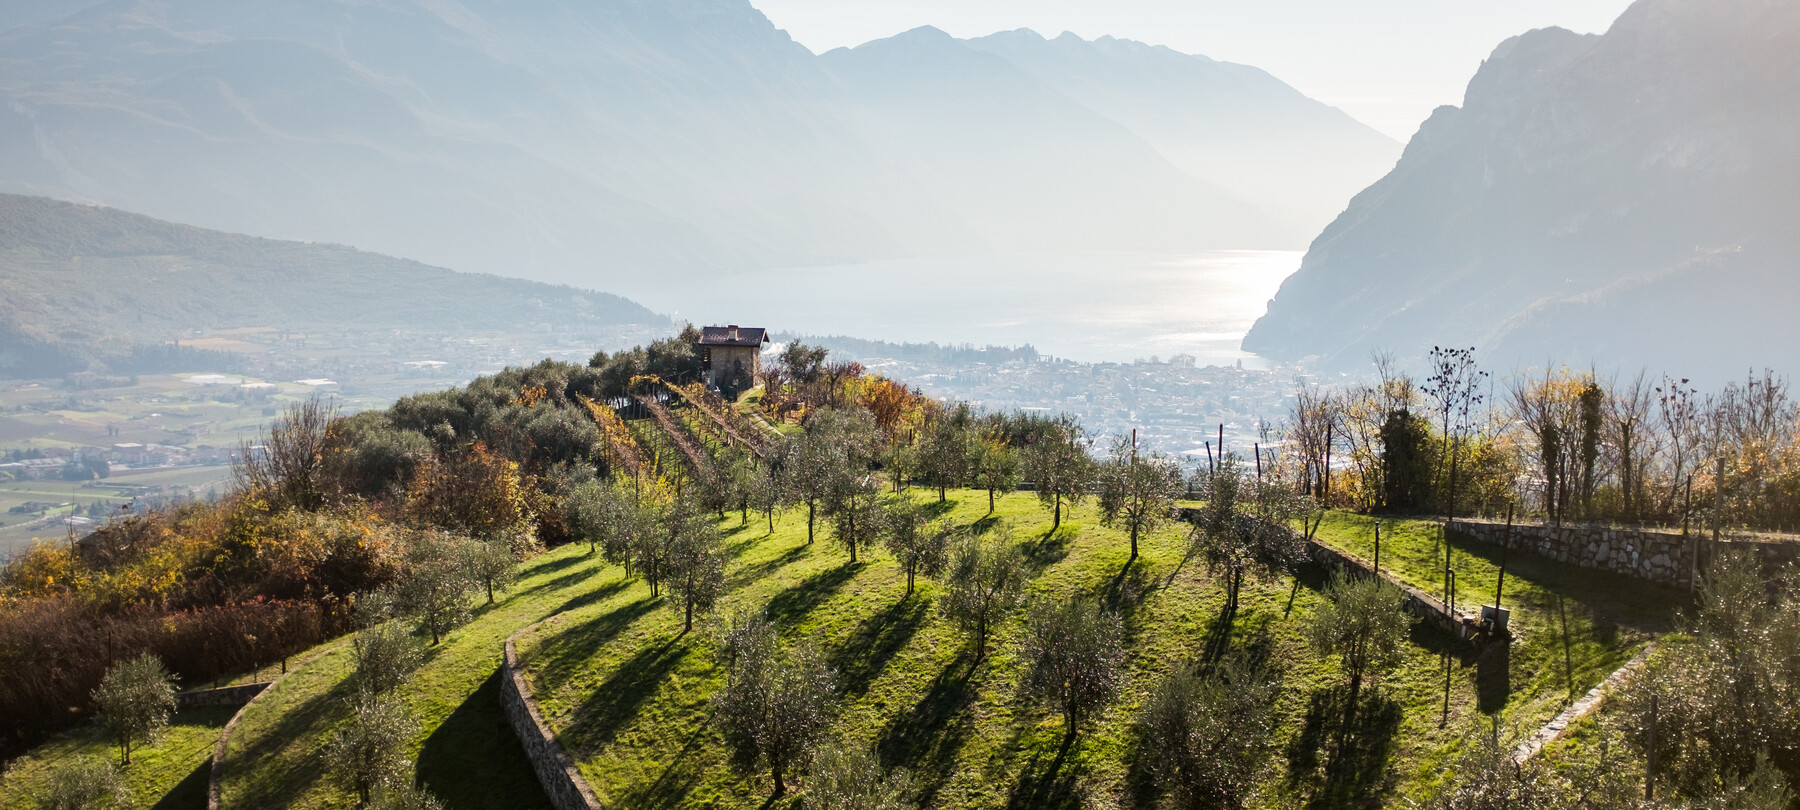 Alto Garda - Garda Trentino - Riva del Garda - Piazze - Raccolta Olive